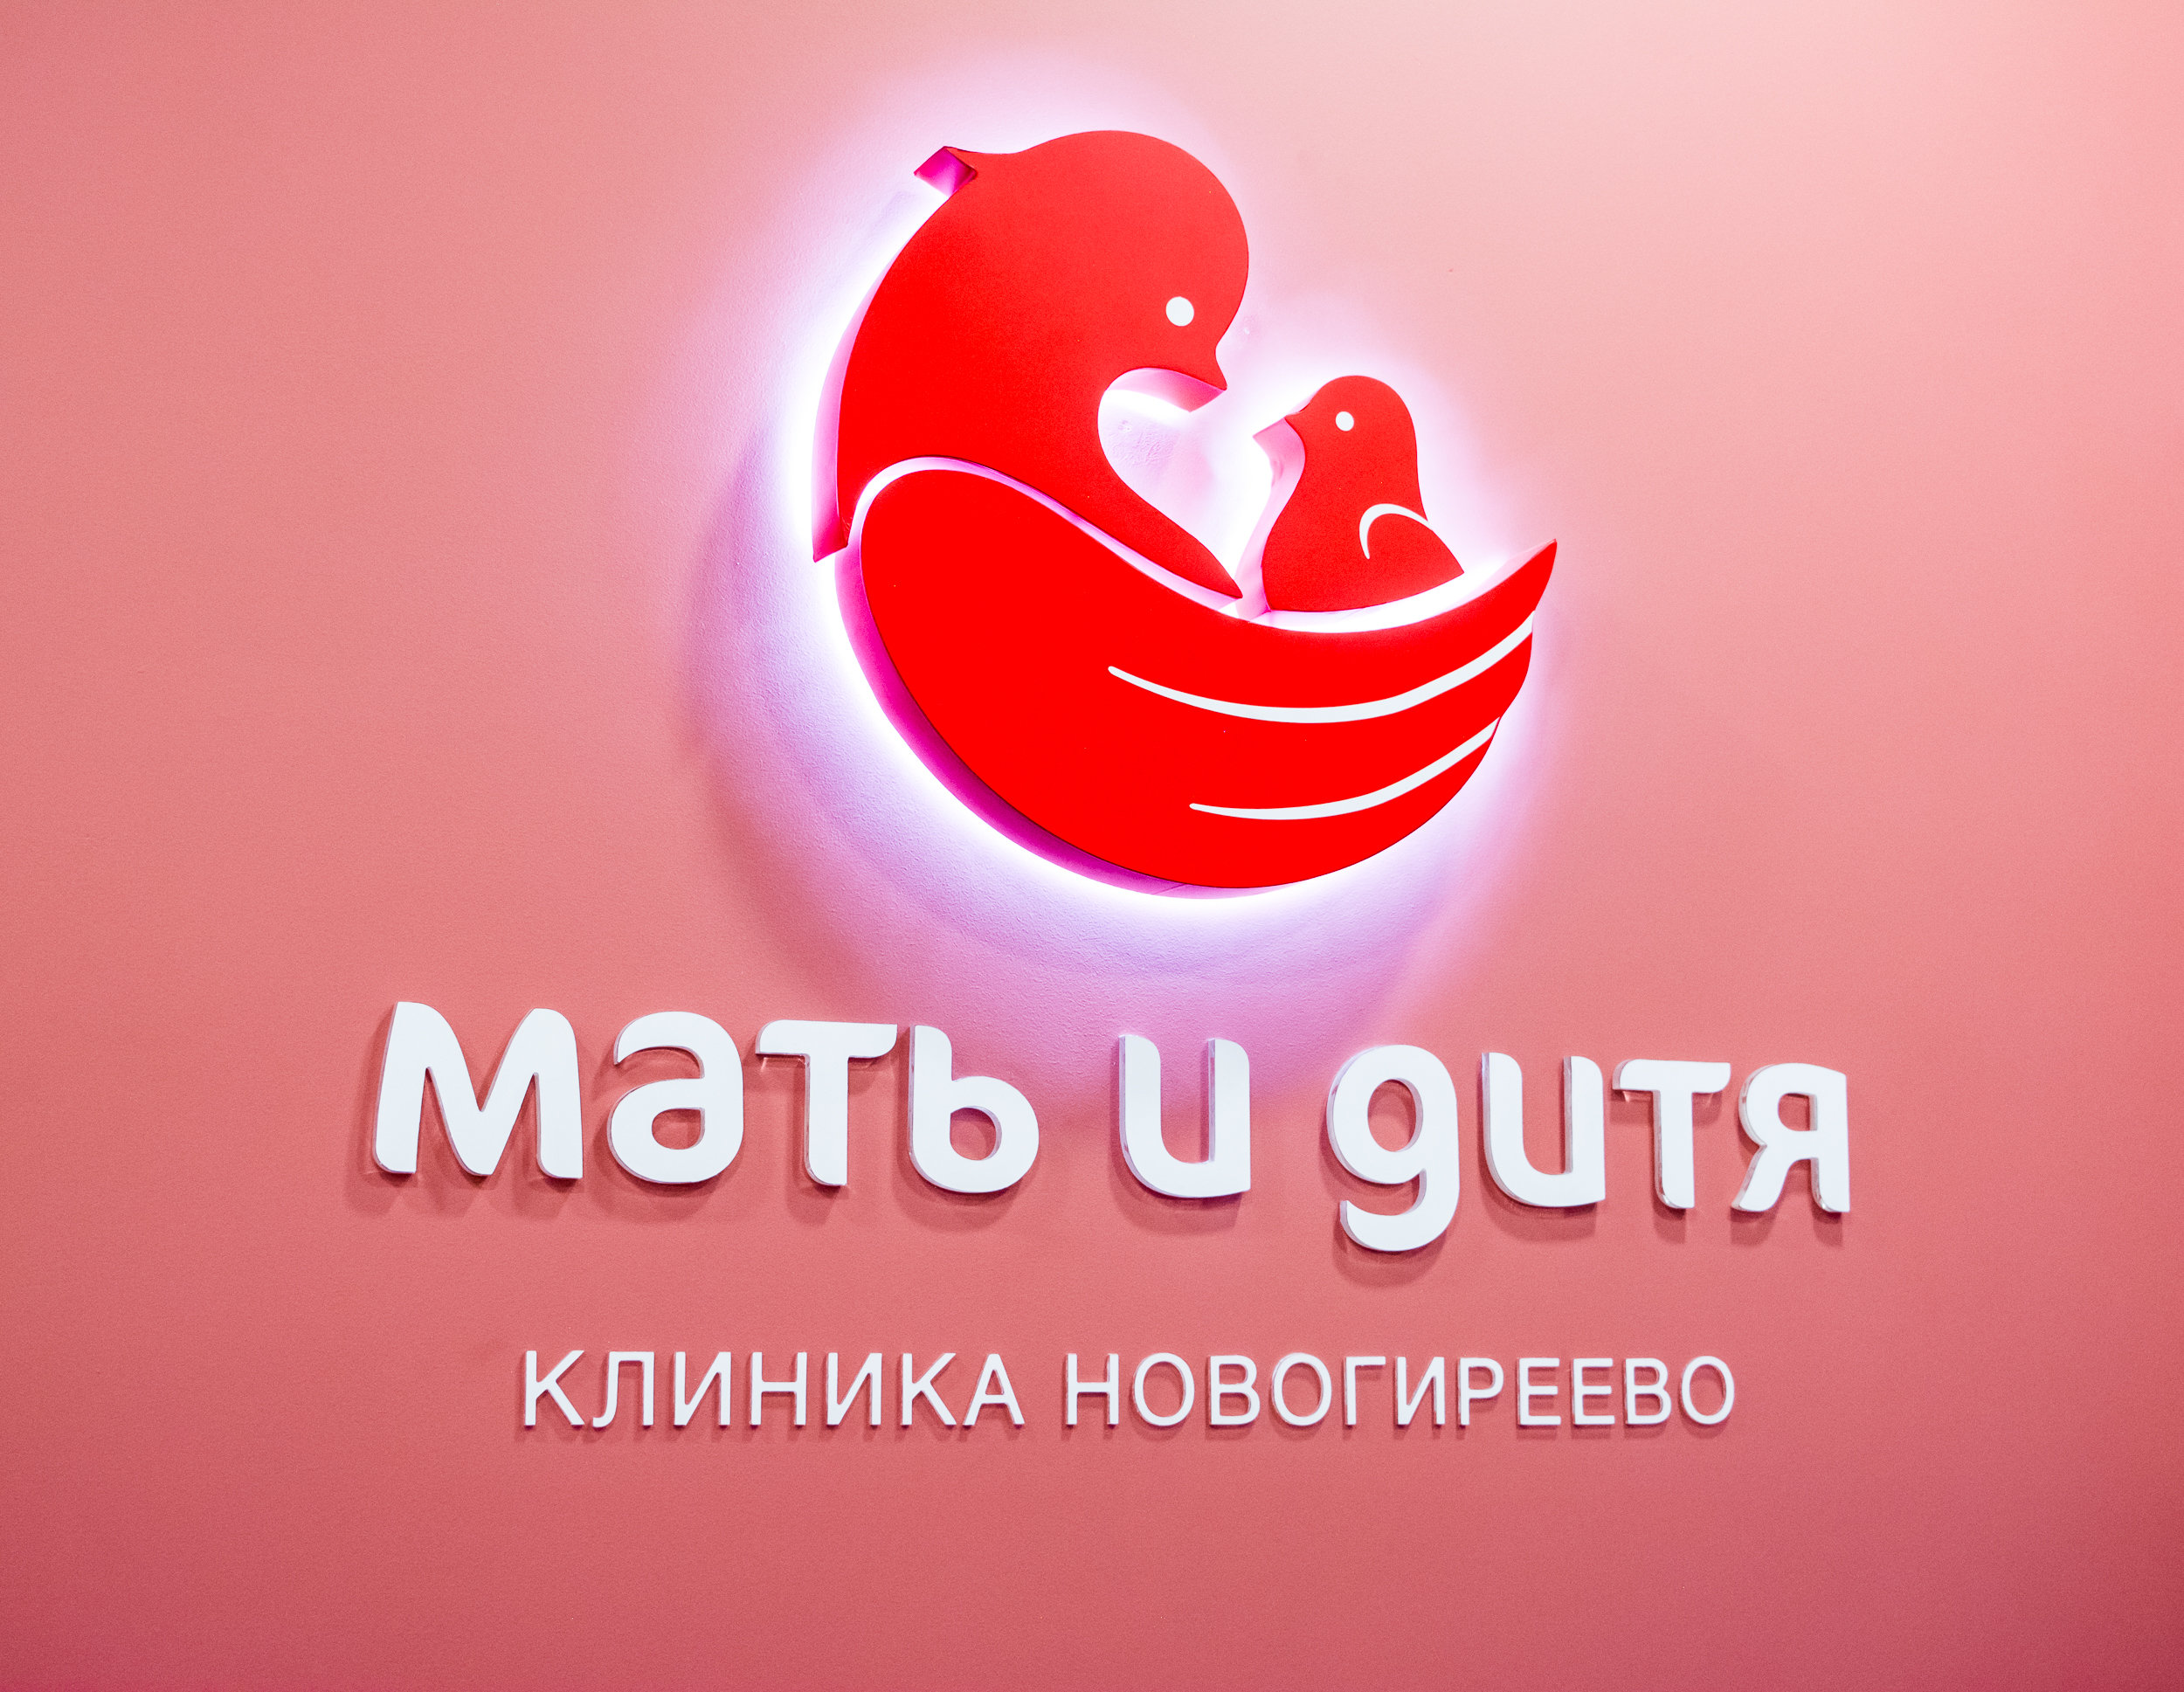 Телефон центра мать и дитя. Мать и дитя группа компаний логотип. Сеть клиник мать и дитя. Мать и дитя клиника лого. Мать и дитя эмблема клиники.